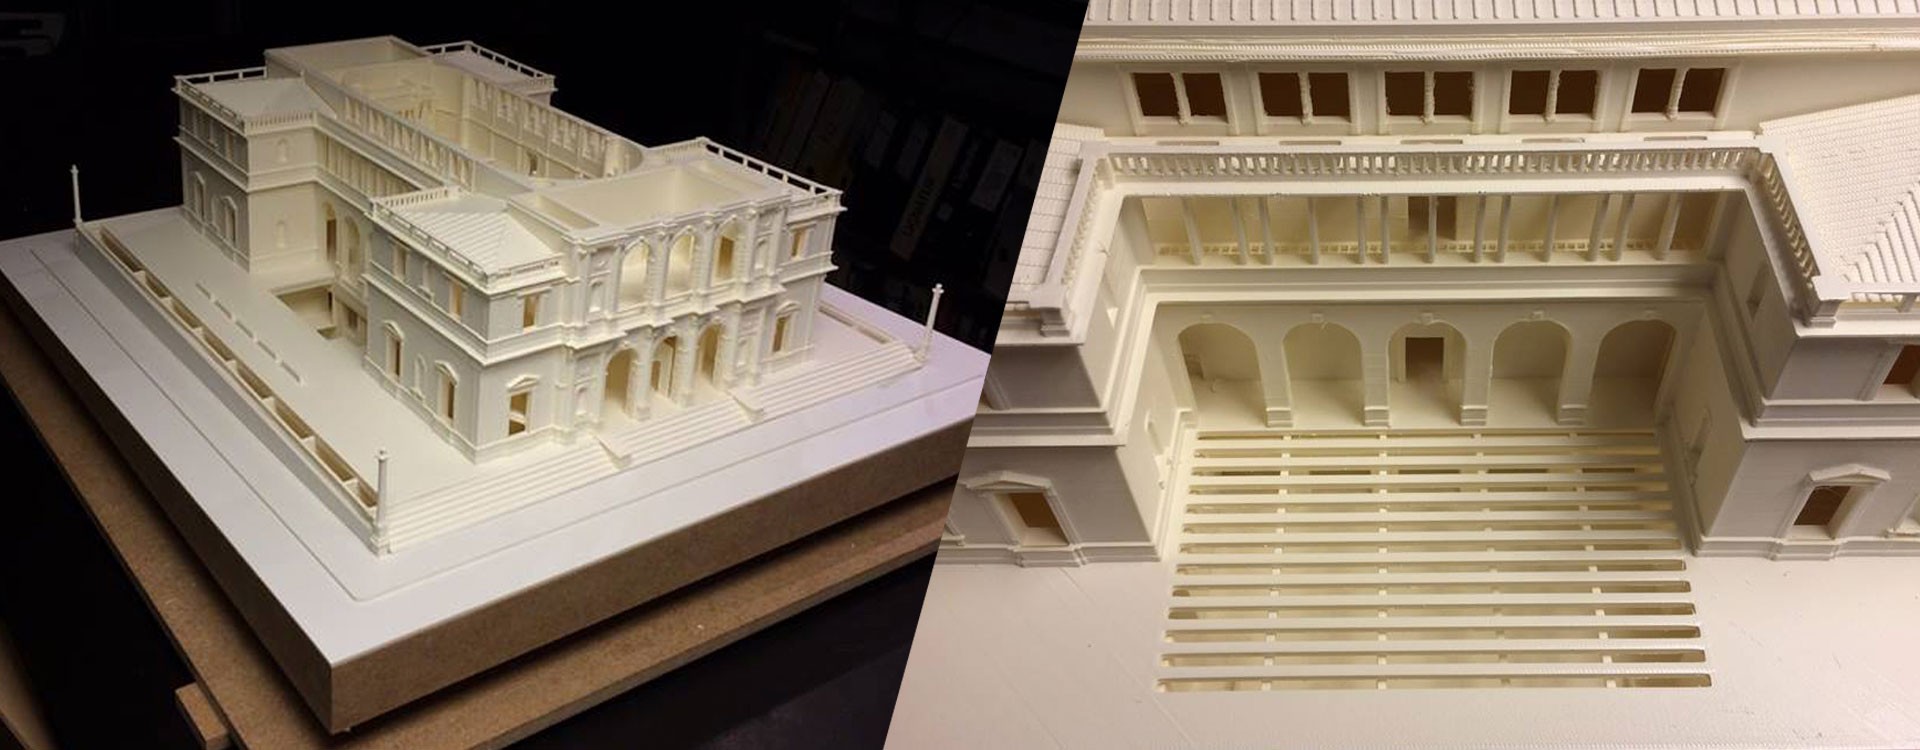 Как 3D-принтеры используются в архитектуре?